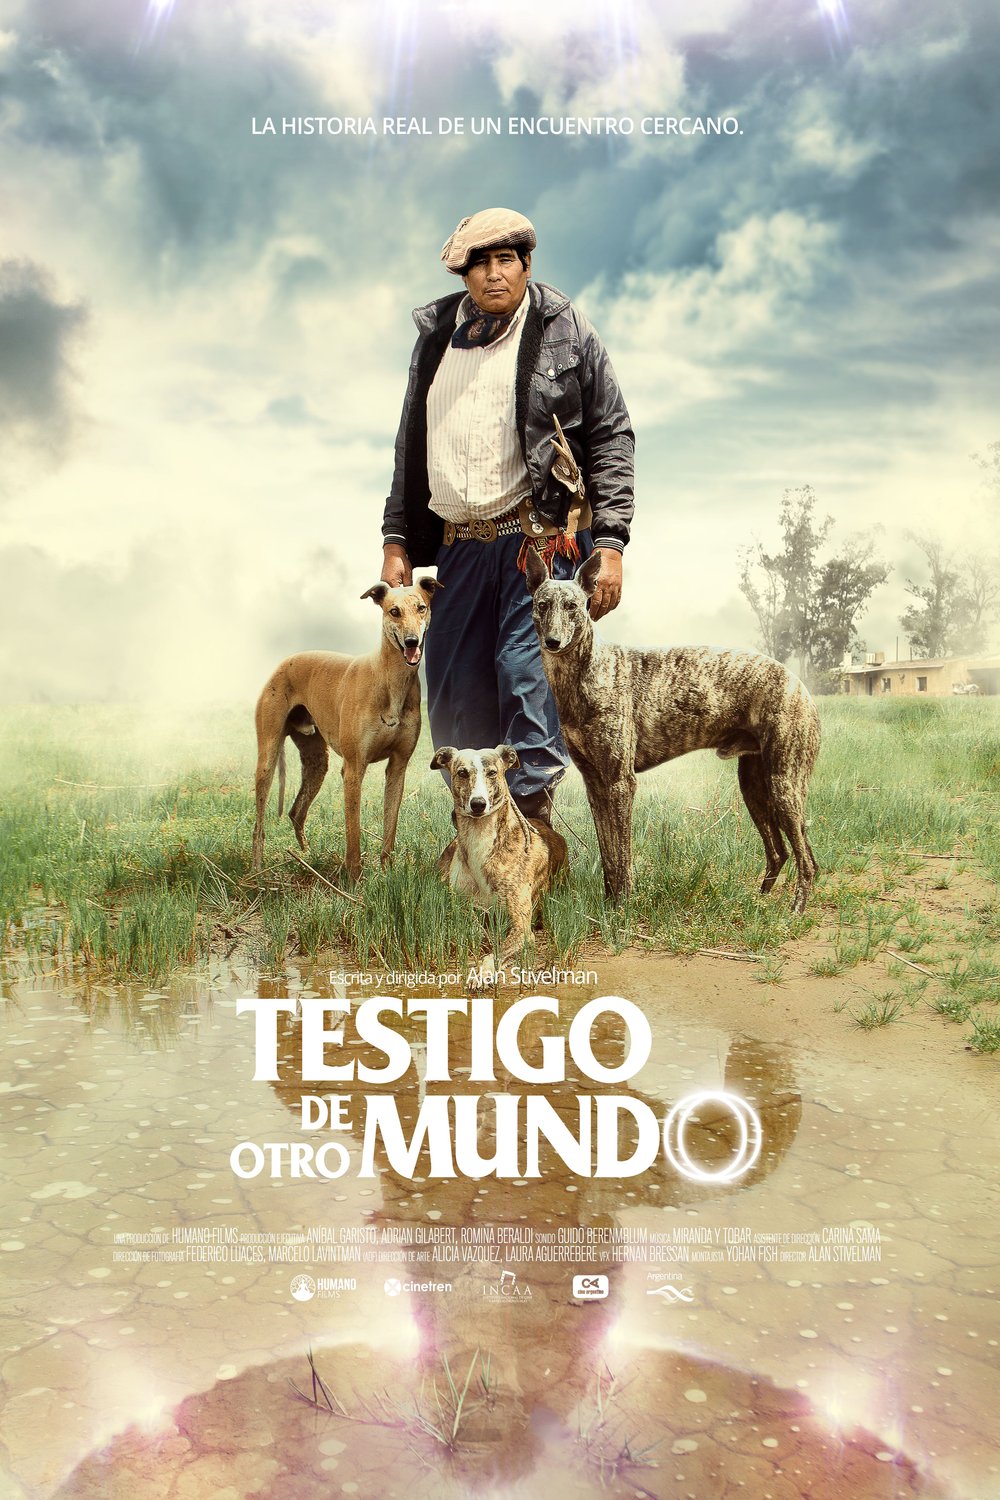 L'affiche originale du film Testigo de otro mundo en espagnol